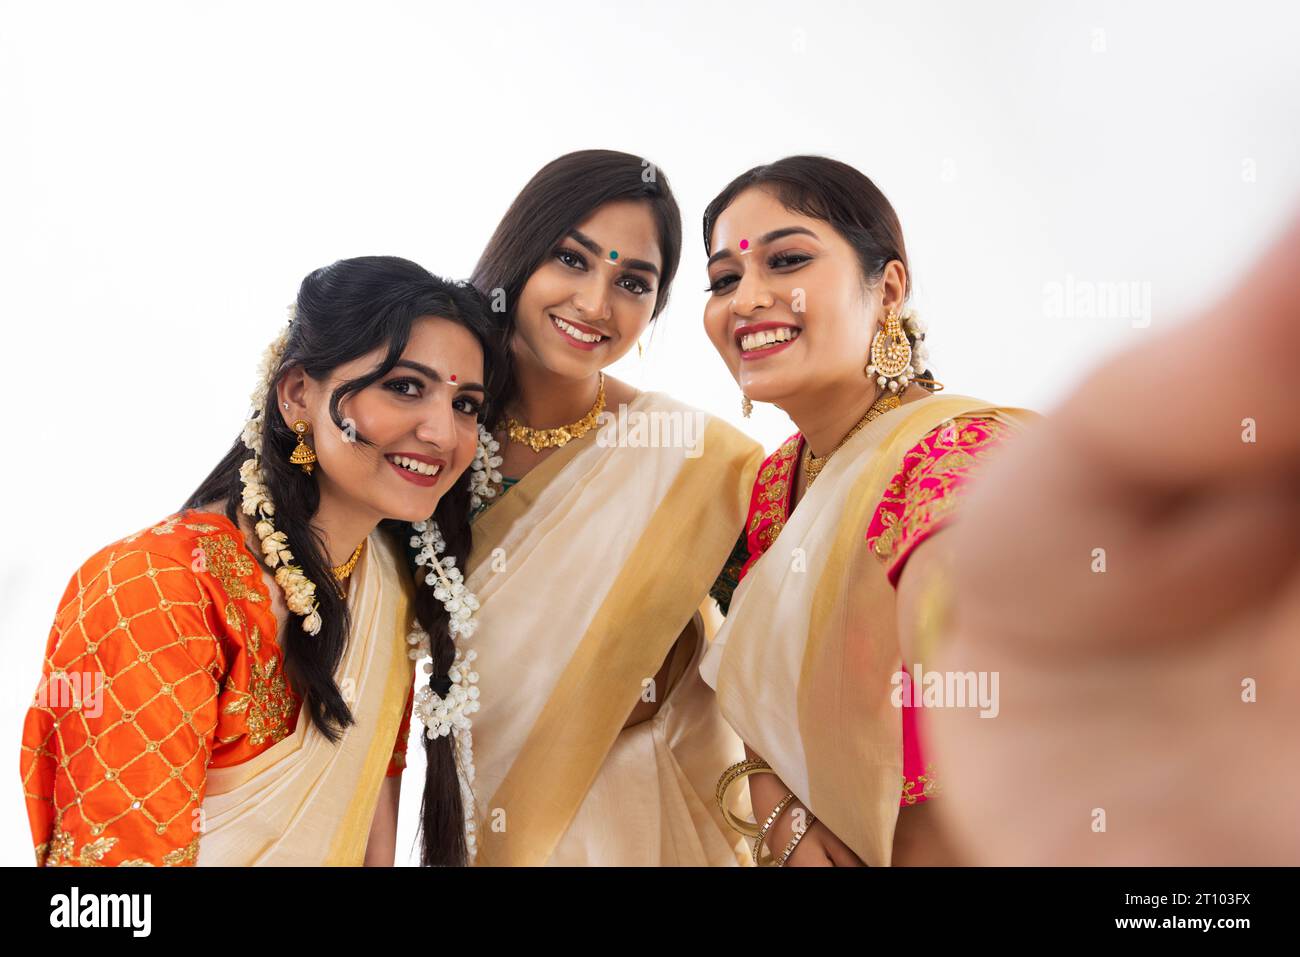 Ritratto di donne dell'India meridionale in sari bianchi che scattano selfie insieme Foto Stock